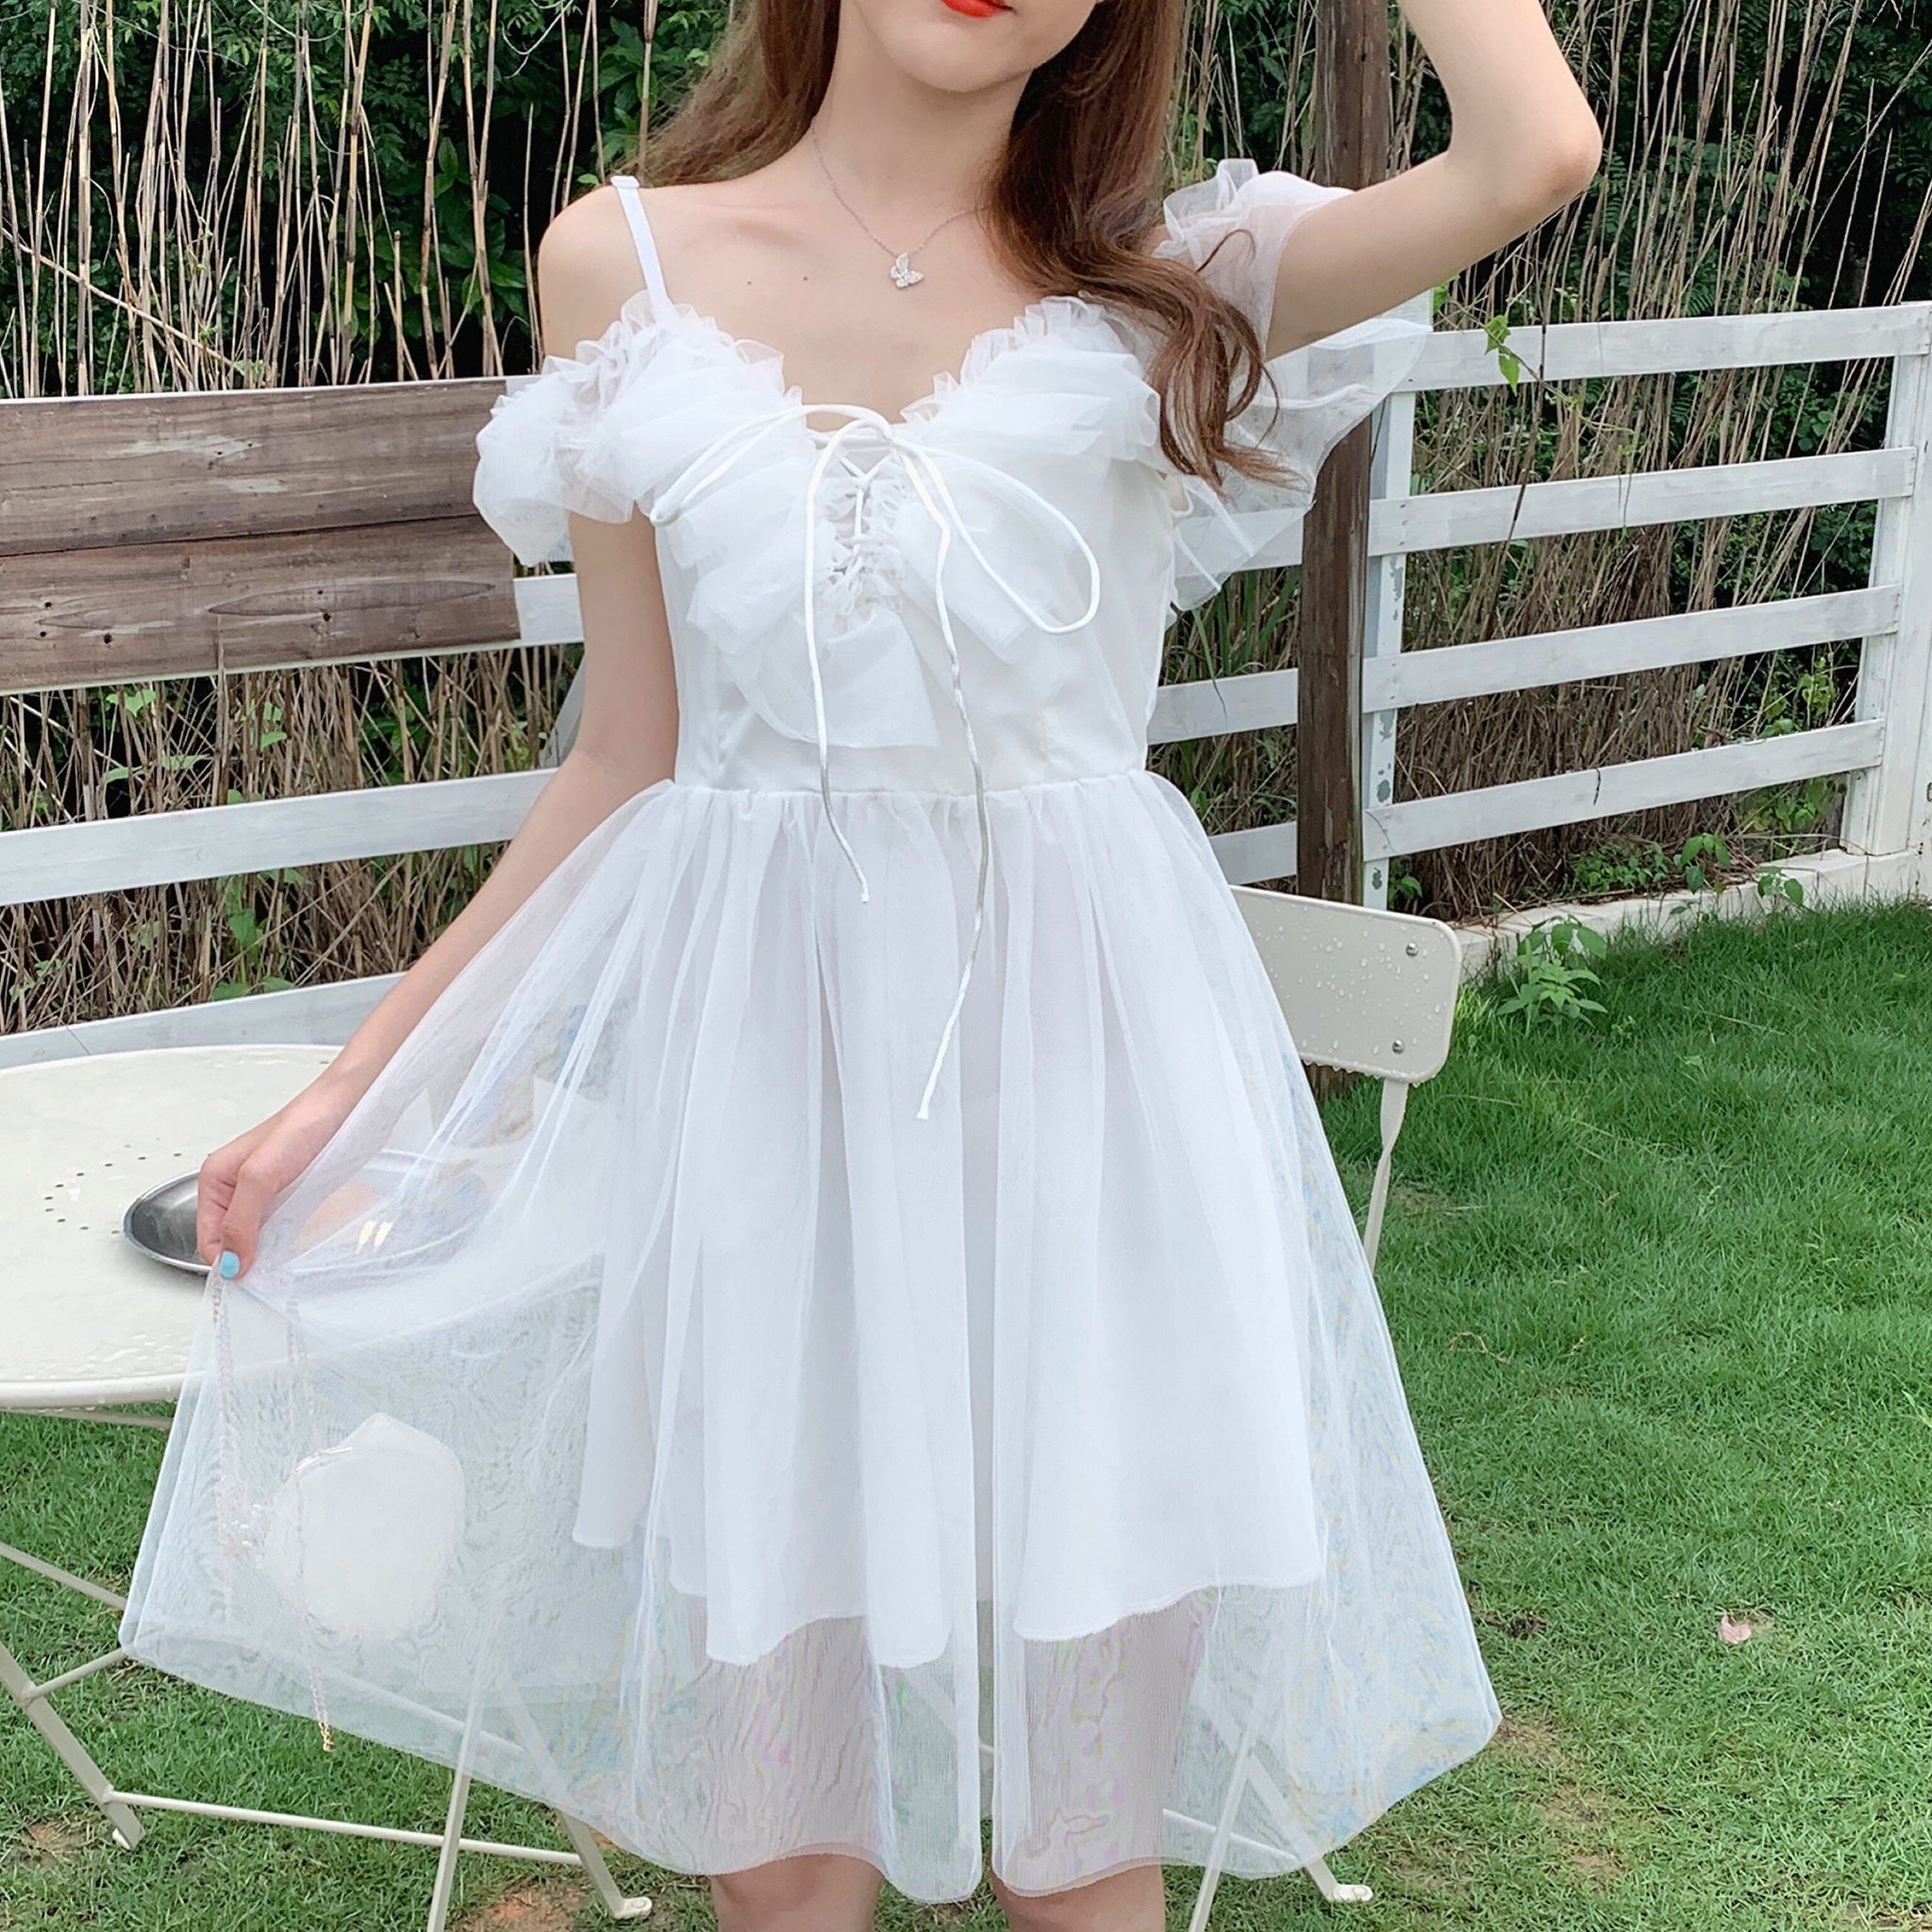 Short White Tulle Dress - Shop on Pinterest